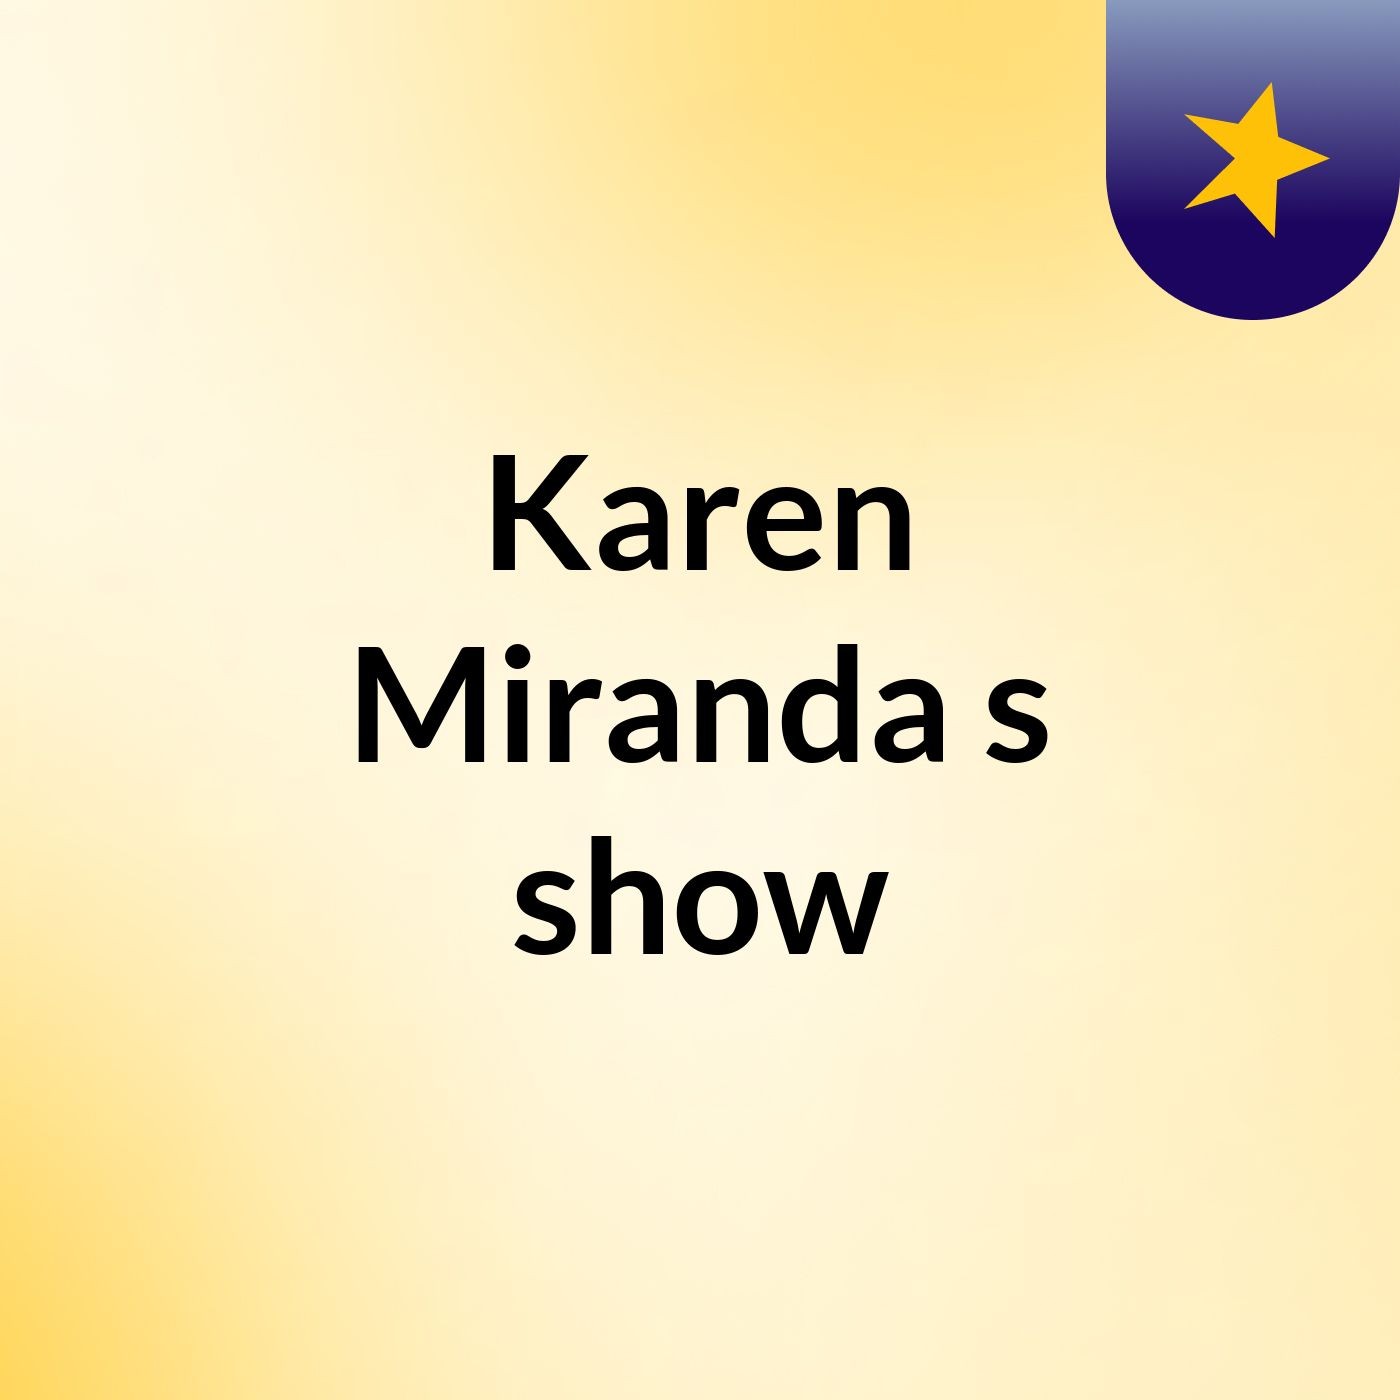 Karen Miranda's show